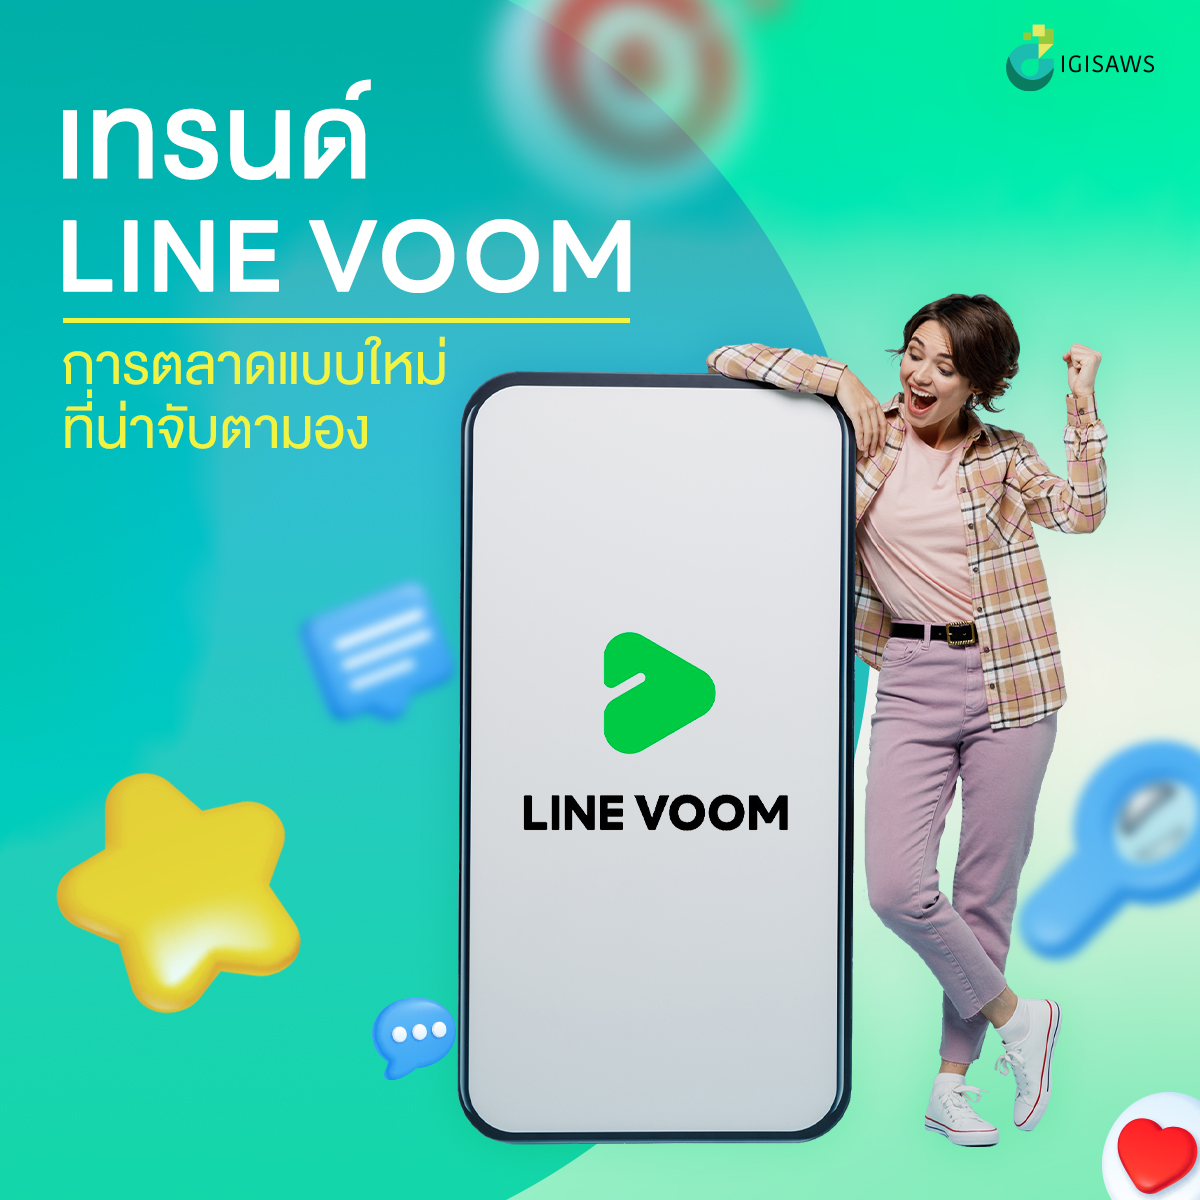 เทรนด์ใหม่ LINE Voom แพลตฟอร์มดี ๆ ที่นักการตลาดไม่ควรพลาด!